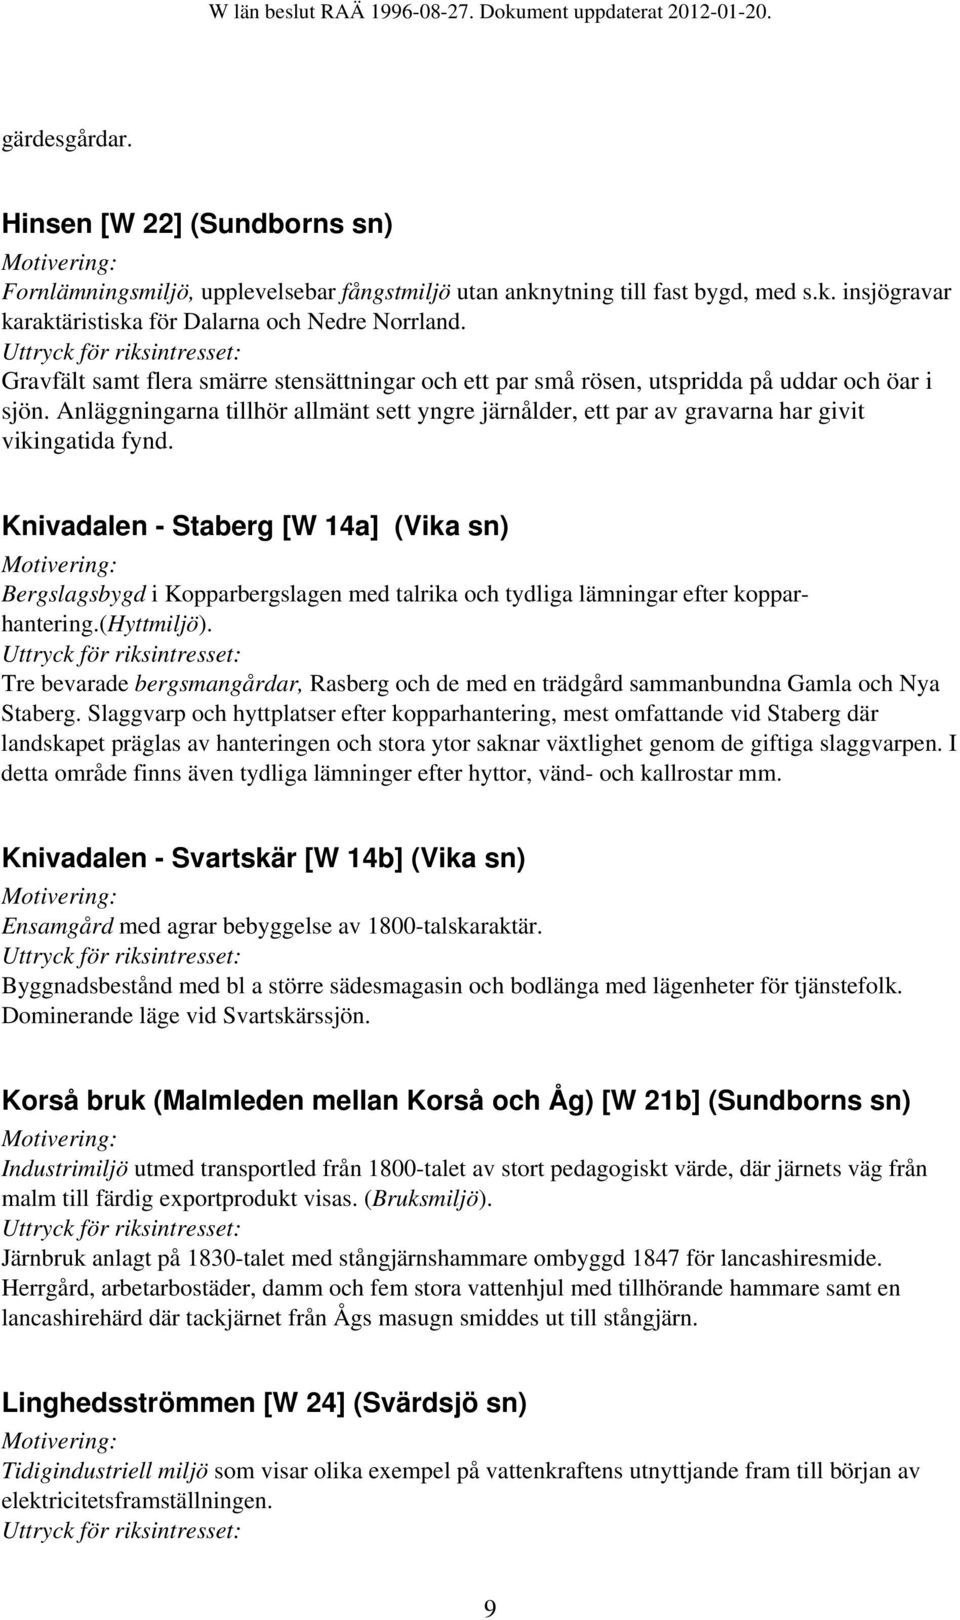 Knivadalen - Staberg [W 14a] (Vika sn) Bergslagsbygd i Kopparbergslagen med talrika och tydliga lämningar efter kopparhantering.(hyttmiljö).